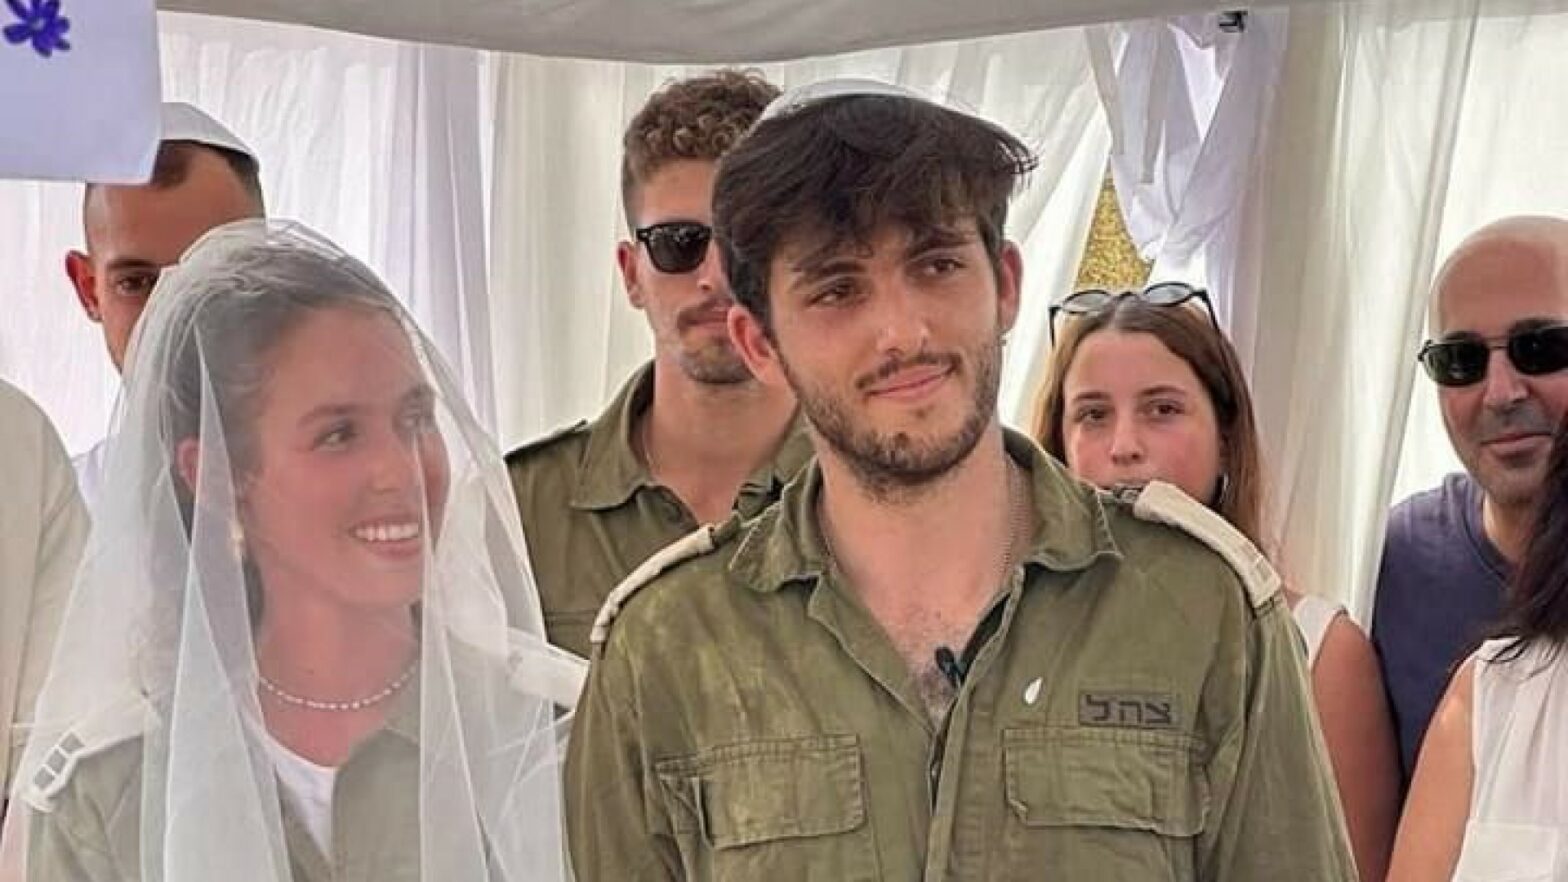 IDF soldaten trouwen nog snel nadat ze beiden zijn opgeroepen